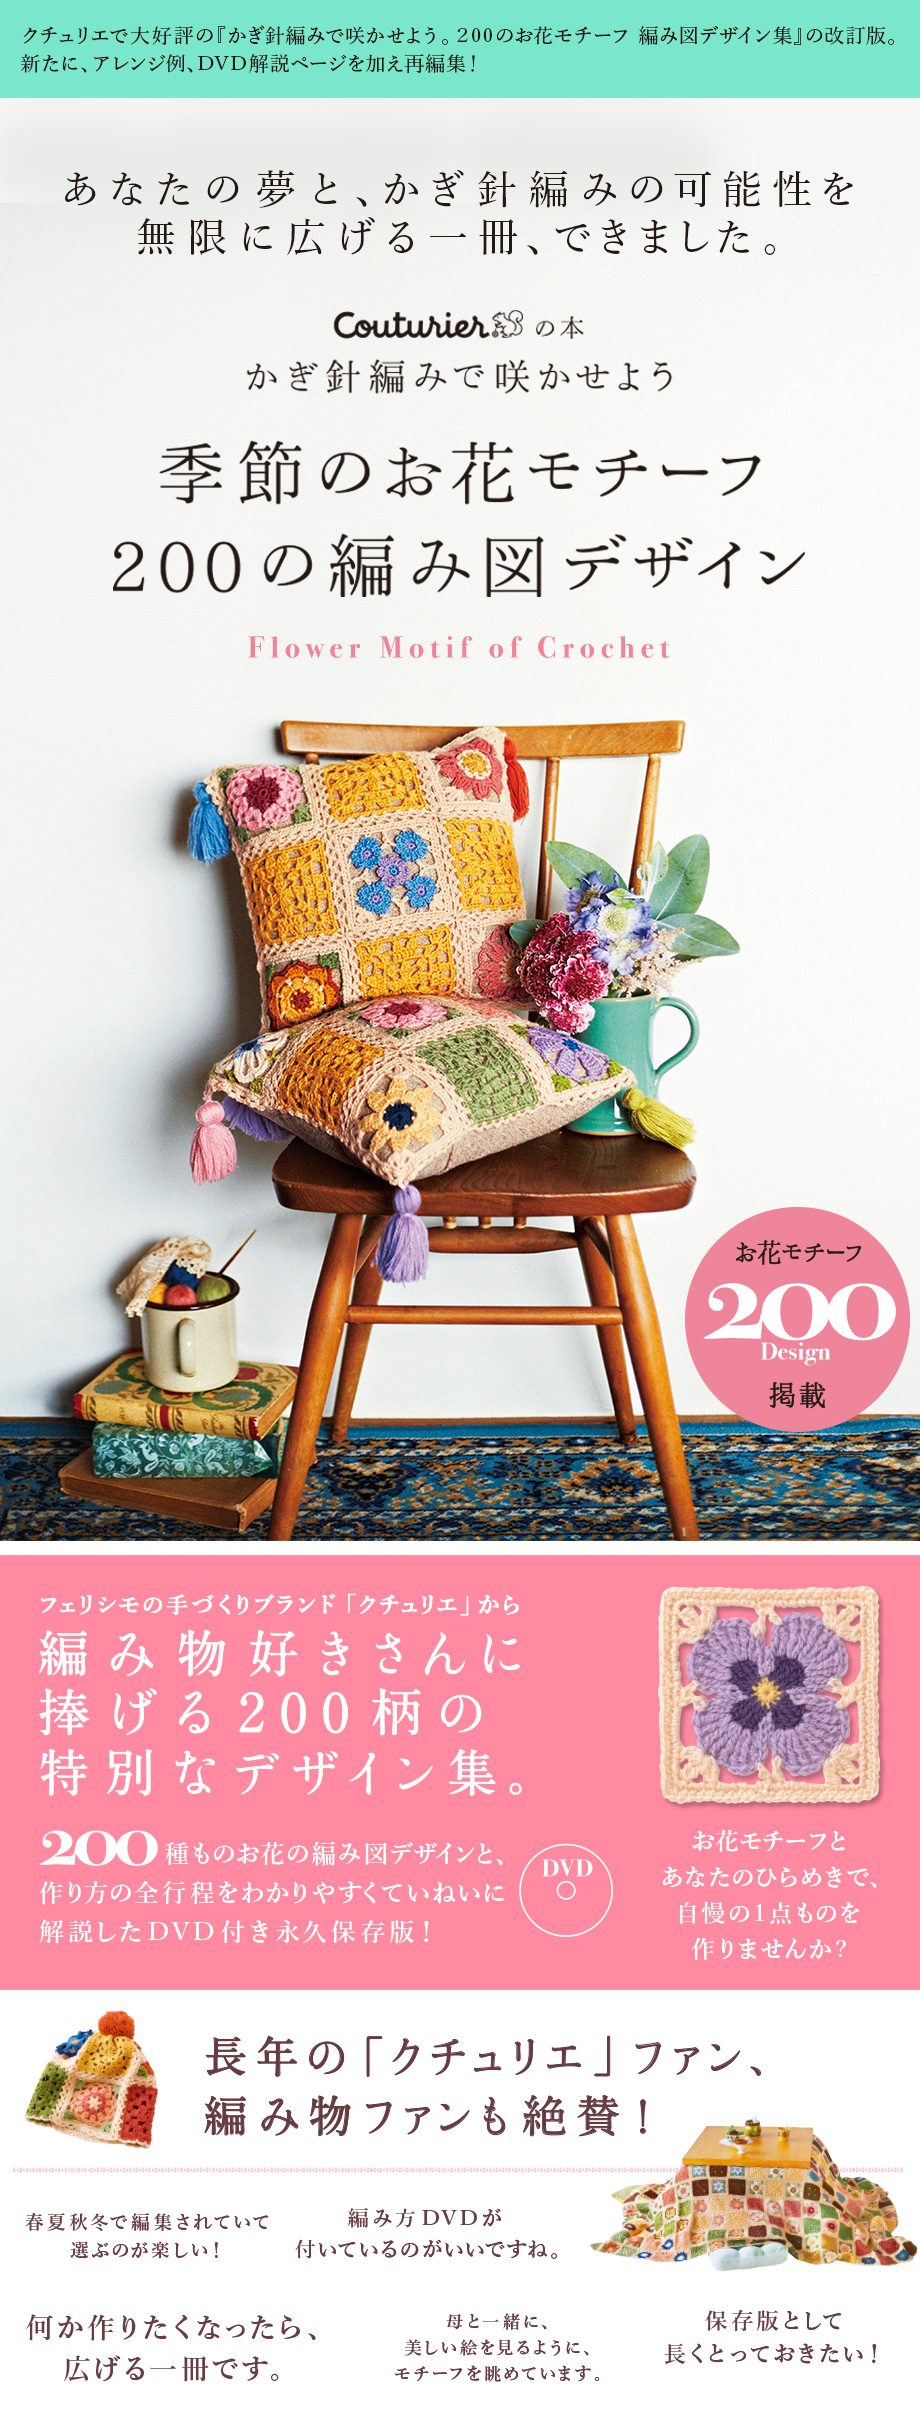 季節のお花モチーフ 200の編み図デザイン